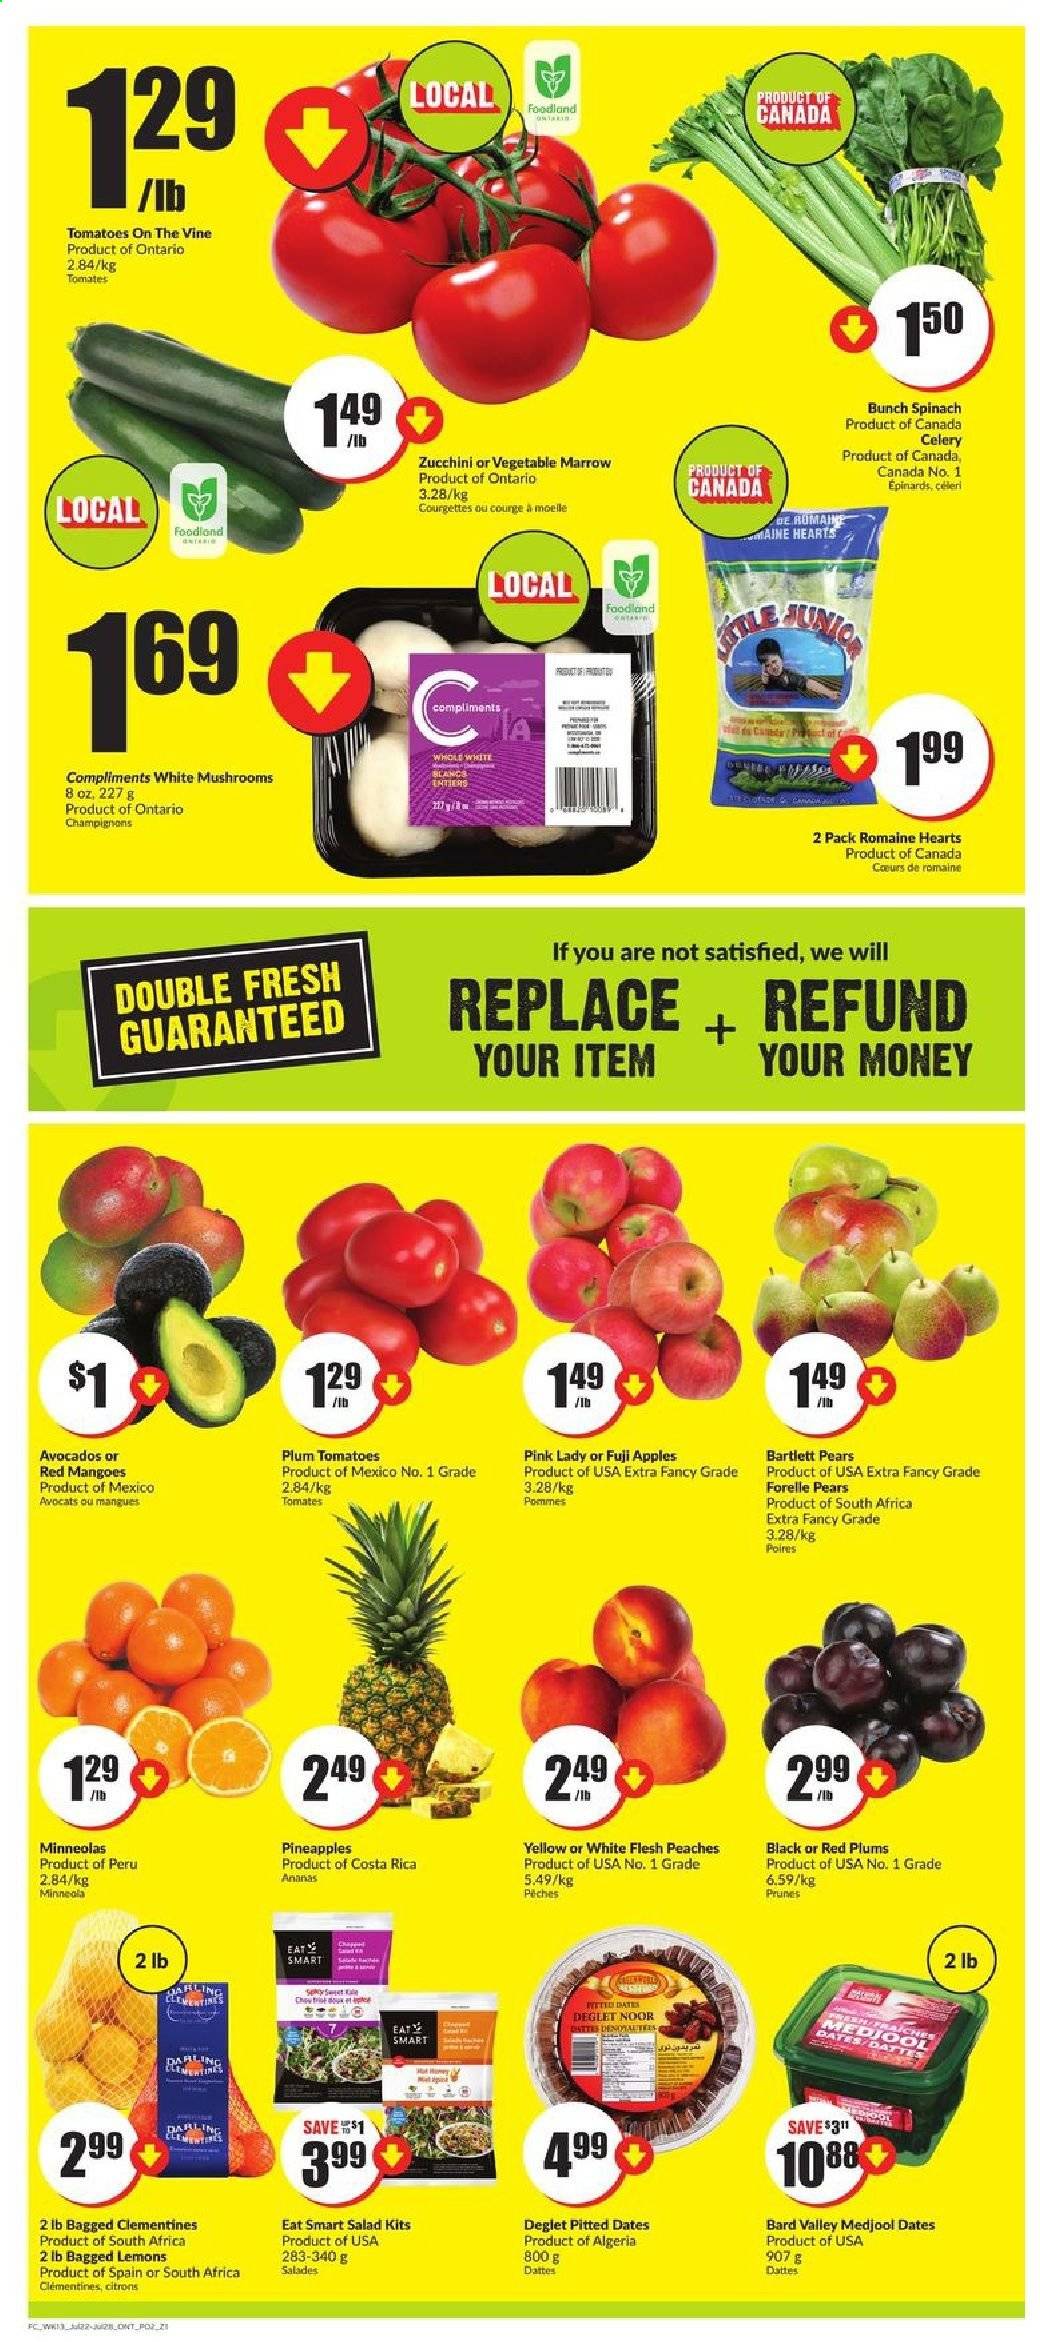 thumbnail - Circulaire Chalo! FreshCo. - 29 Juillet 2021 - 04 Août 2021 - Produits soldés - tomates, courge, épinard, pommes, ananas, citron, poire, pêche, datte, céleri, courgette, clémentines. Page 2.